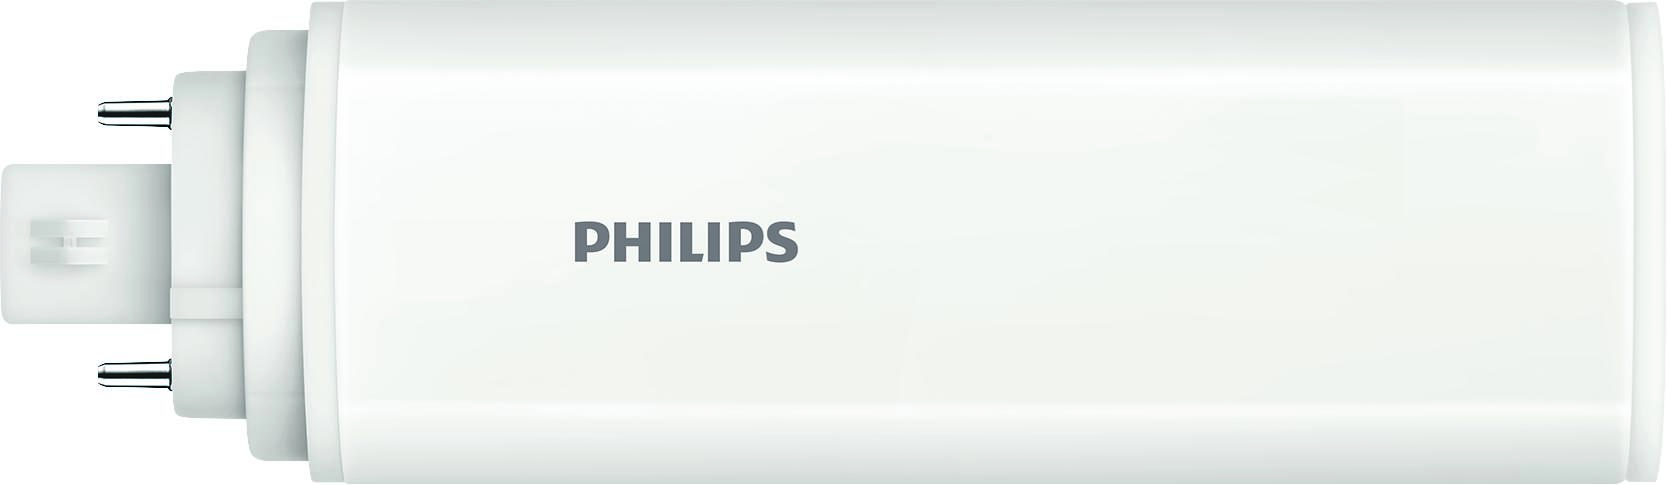 Philips Lighting LED-Kompaktlampe f. EVG GX24q-3, 830 CoreLEDPLT #48780200